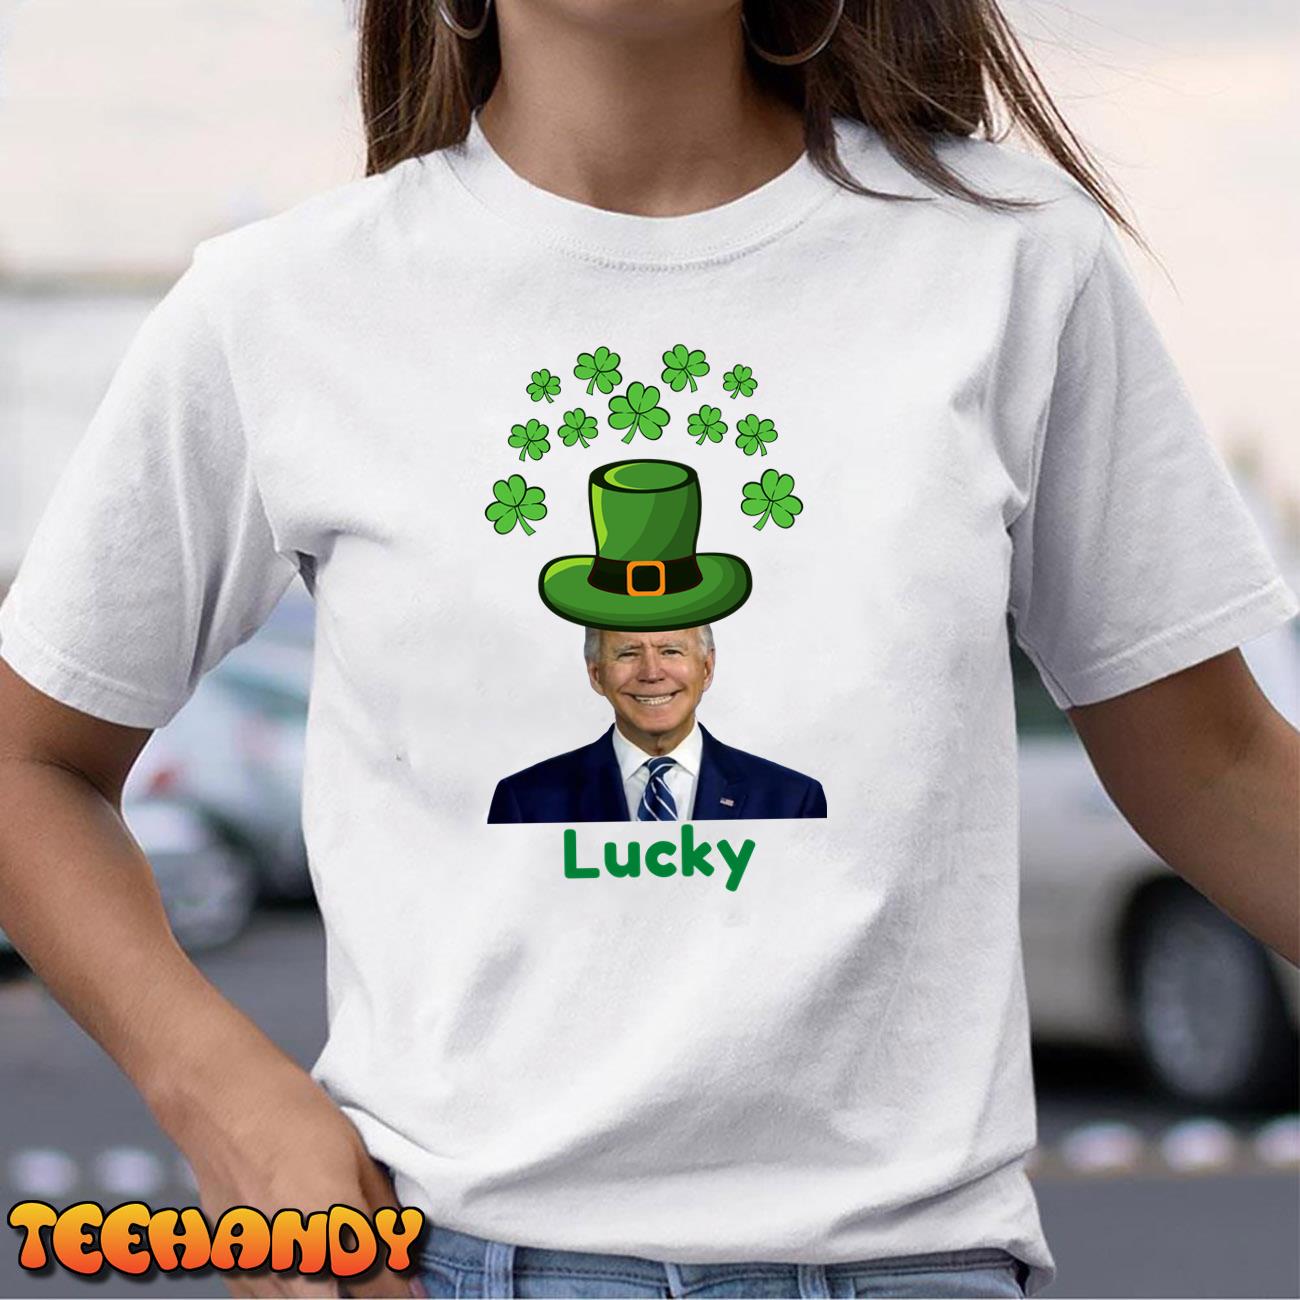 Biden St Patricks Day Shirt, FJB St Patricks T Shirt, Saint Patricks Shirt